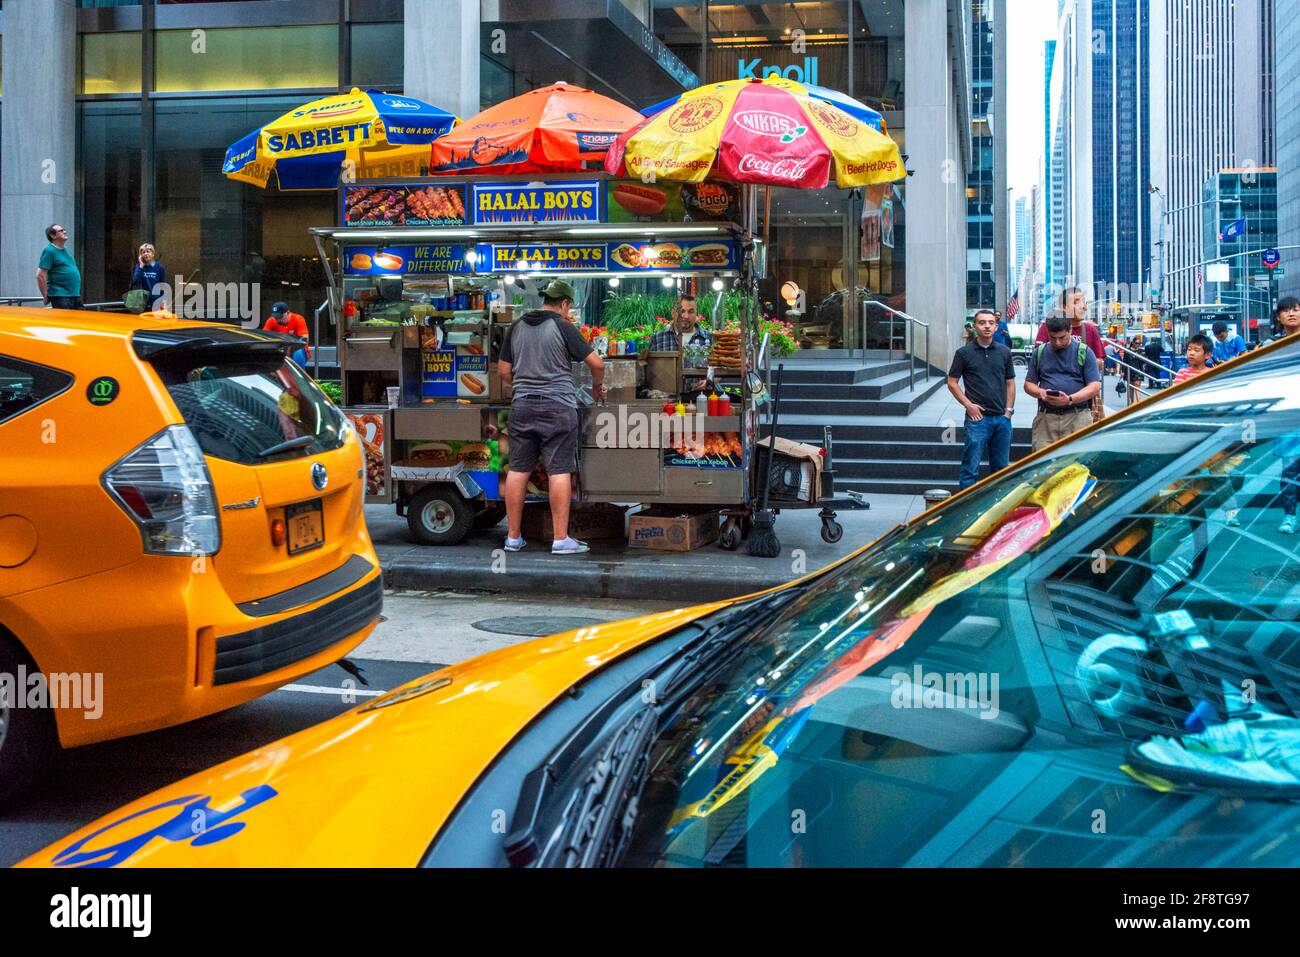 New York street food stand con vendita di cibo halal, W54th Street e Fifth Avenue junction, New York City USA Foto Stock